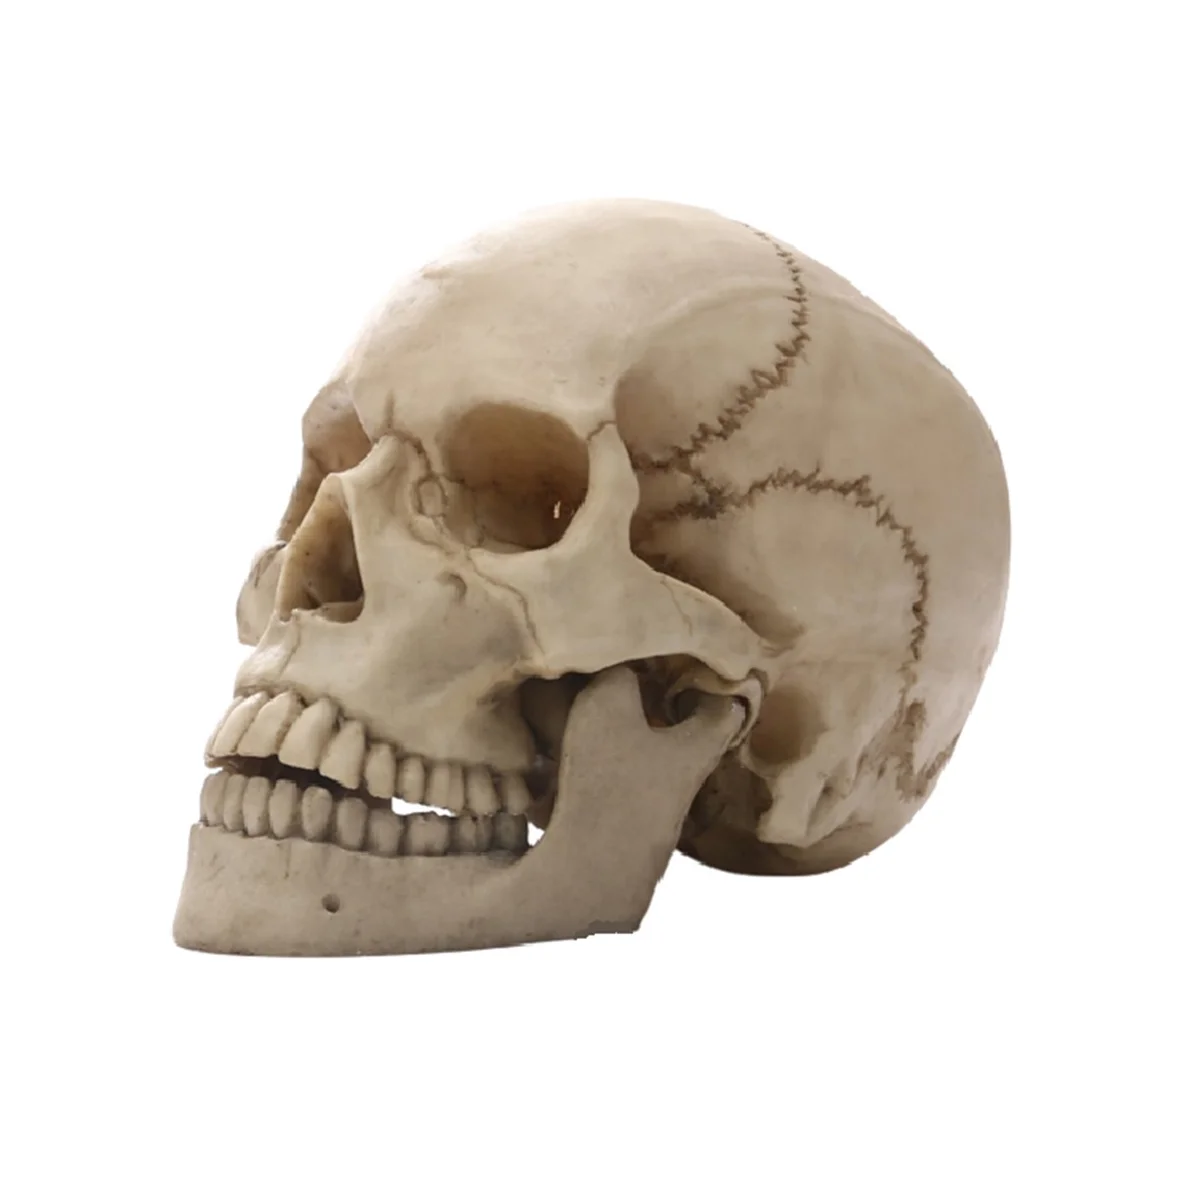 

Статуэтка человека голова черепа для домашнего декора, статуэтки из смолы на Хэллоуин, искусственная медицинская обучающая эскизная модель, поделки